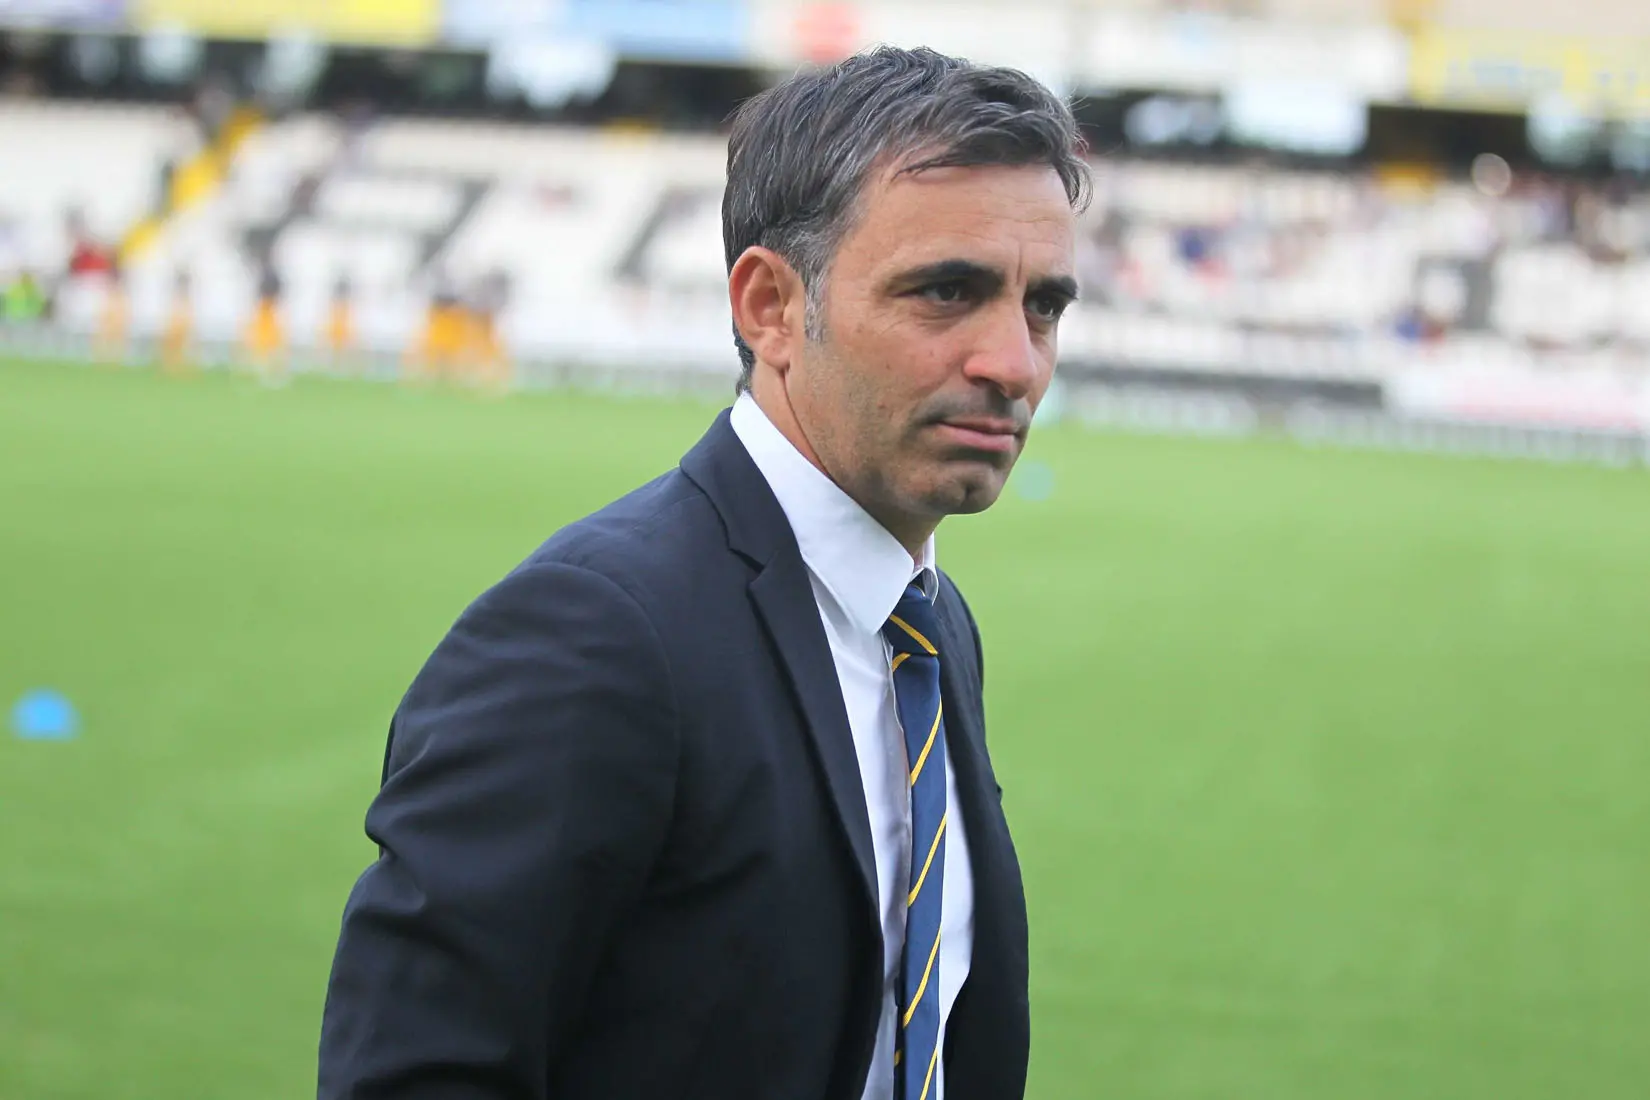 Eugenio Corini, coach of Palermo